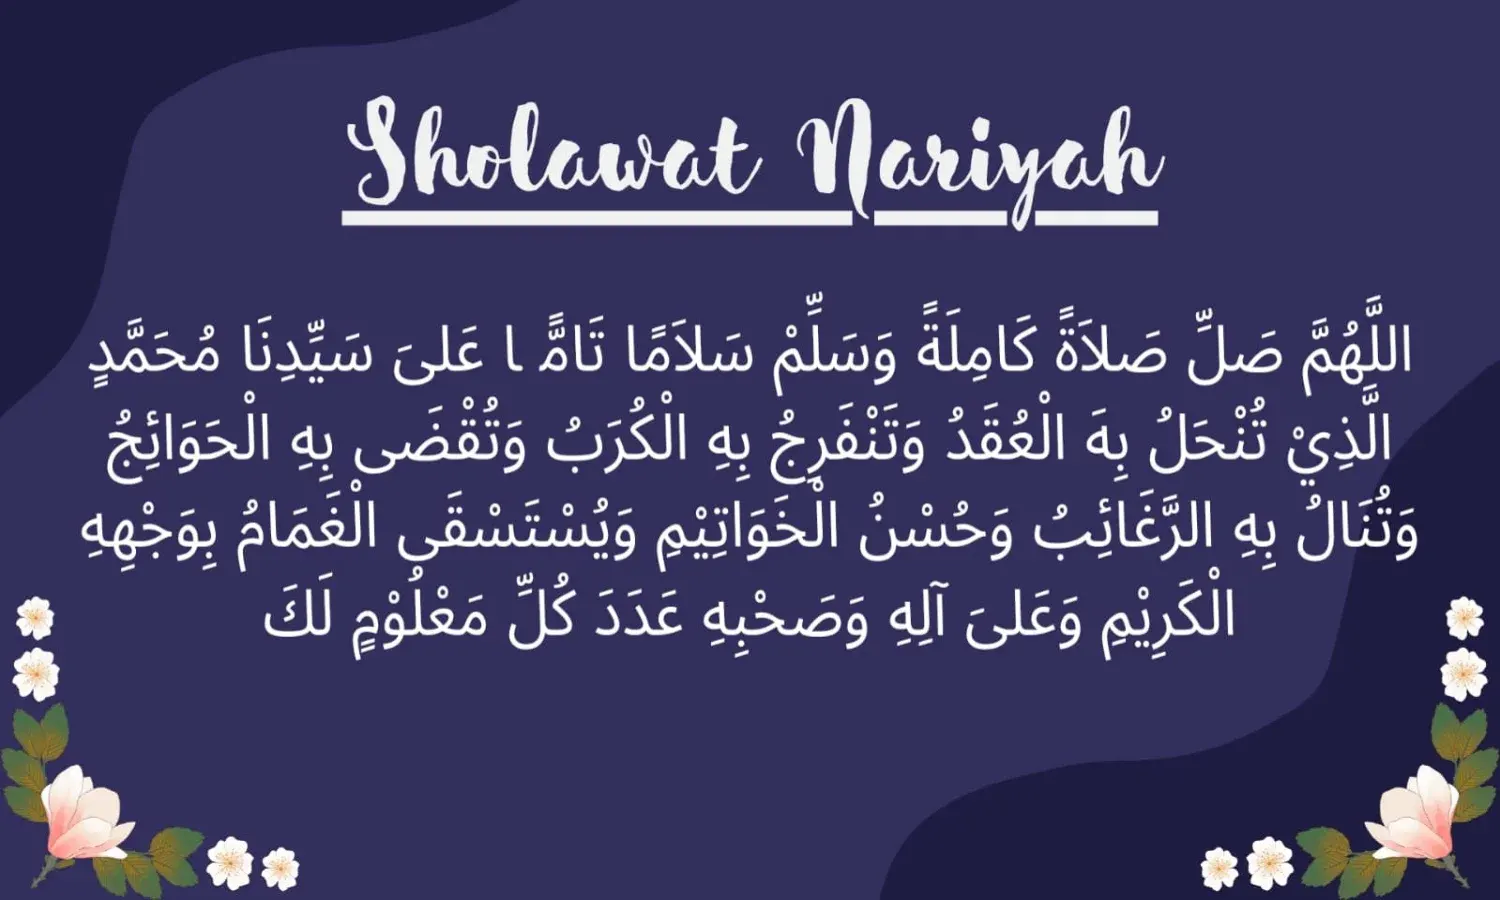 Sholawat Nariyah : Lengkap Bahasa Arab, Latin, Arti, Waktu Amalan dan Keutamaannya